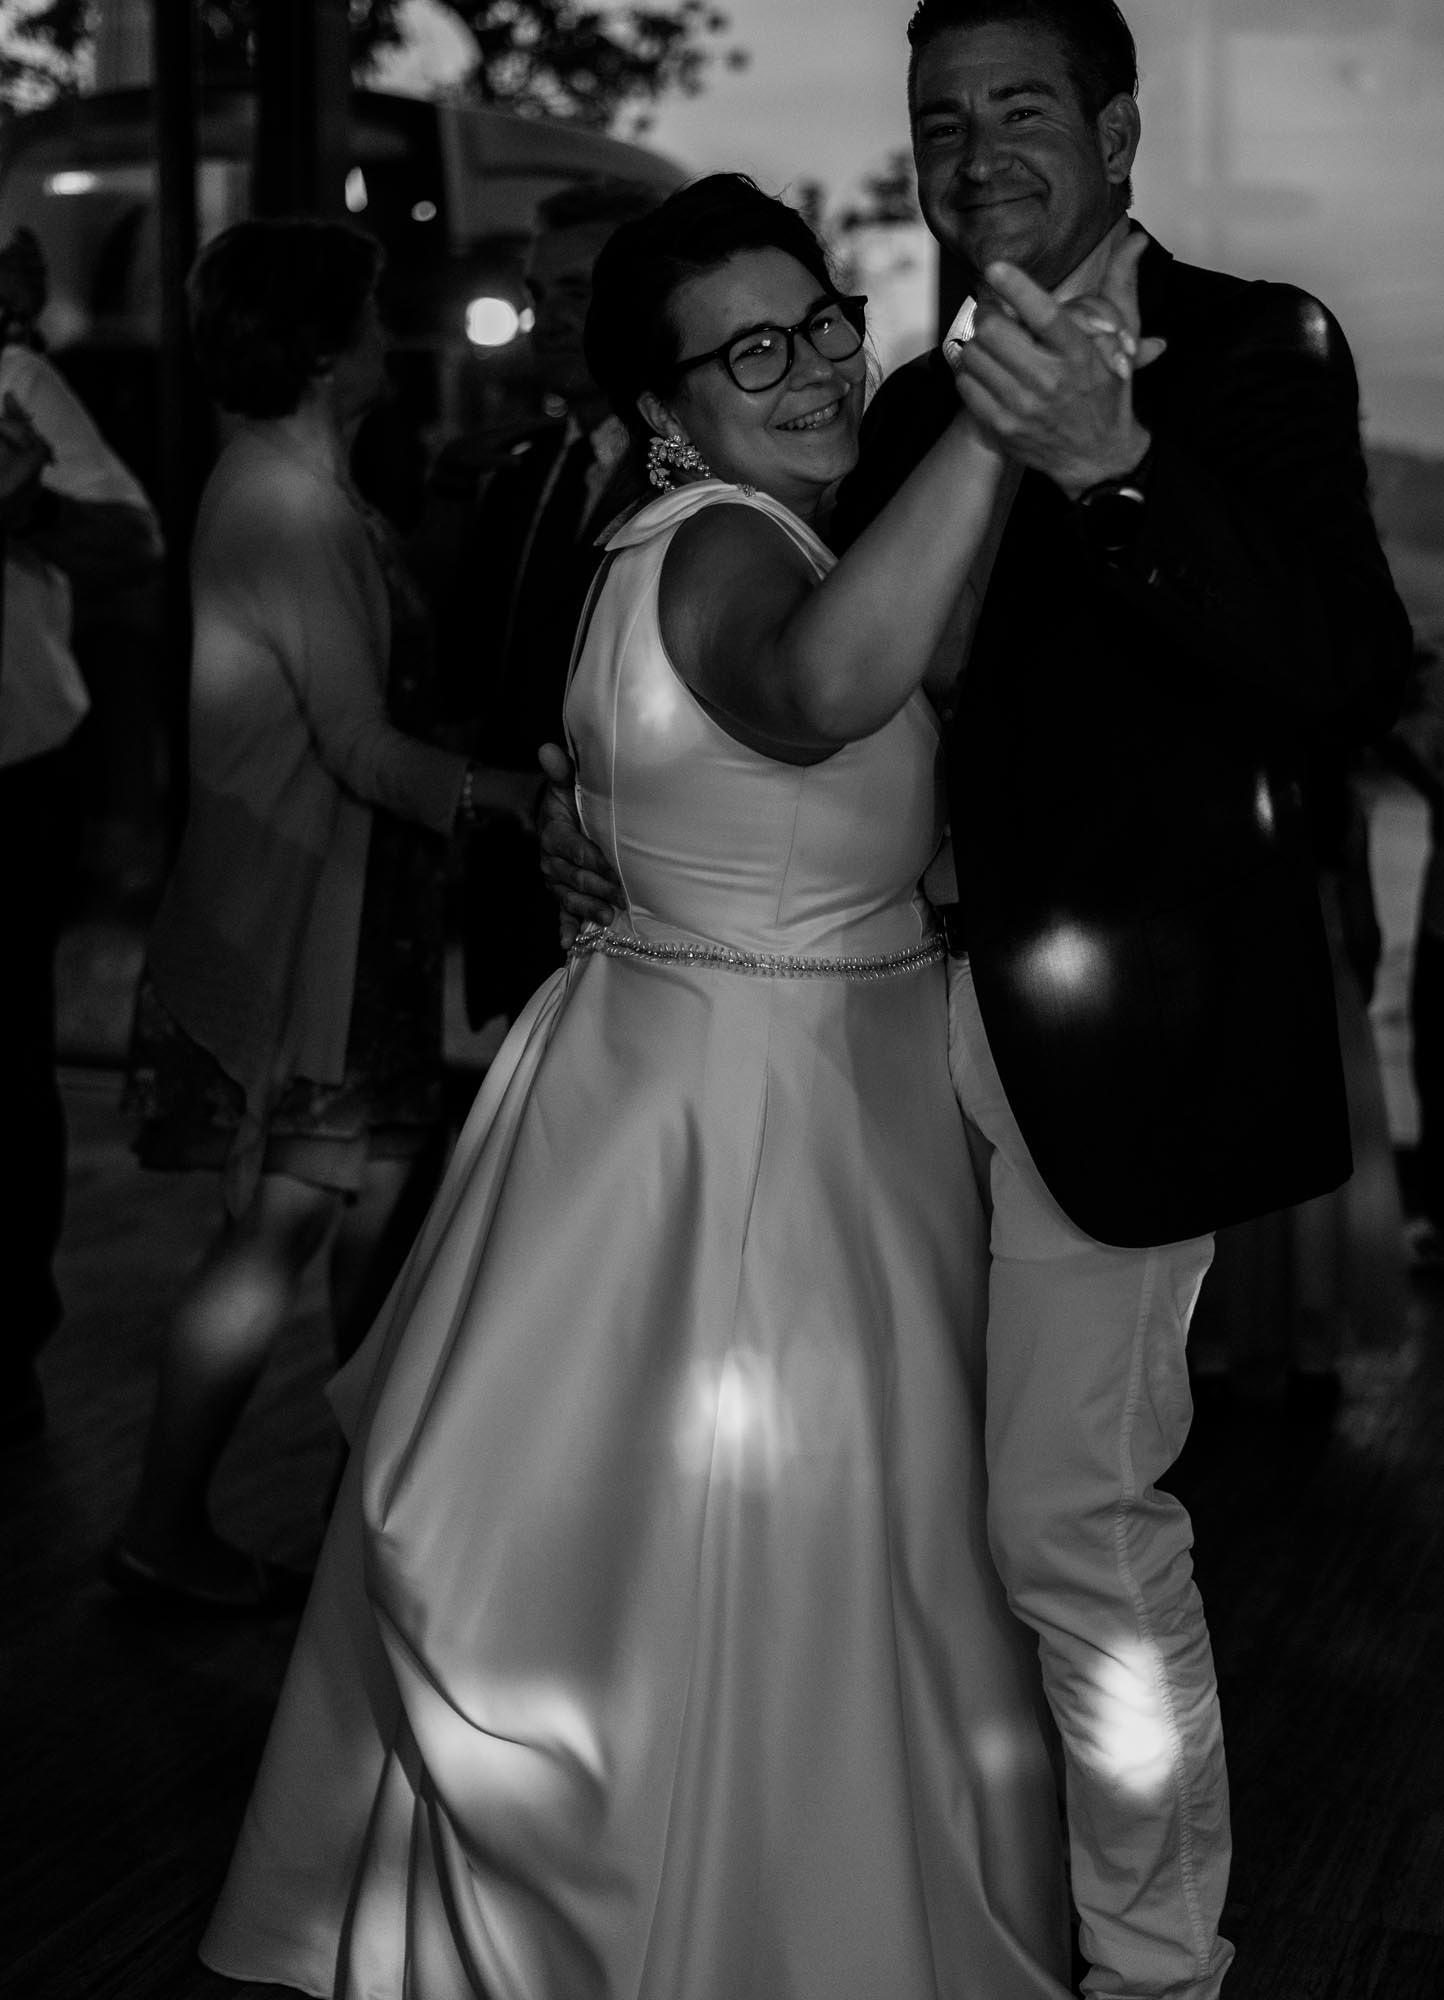 Hochzeitsfotos_Hochzeitsreportage in Wien_Feier_Braut tanzt mit Freund